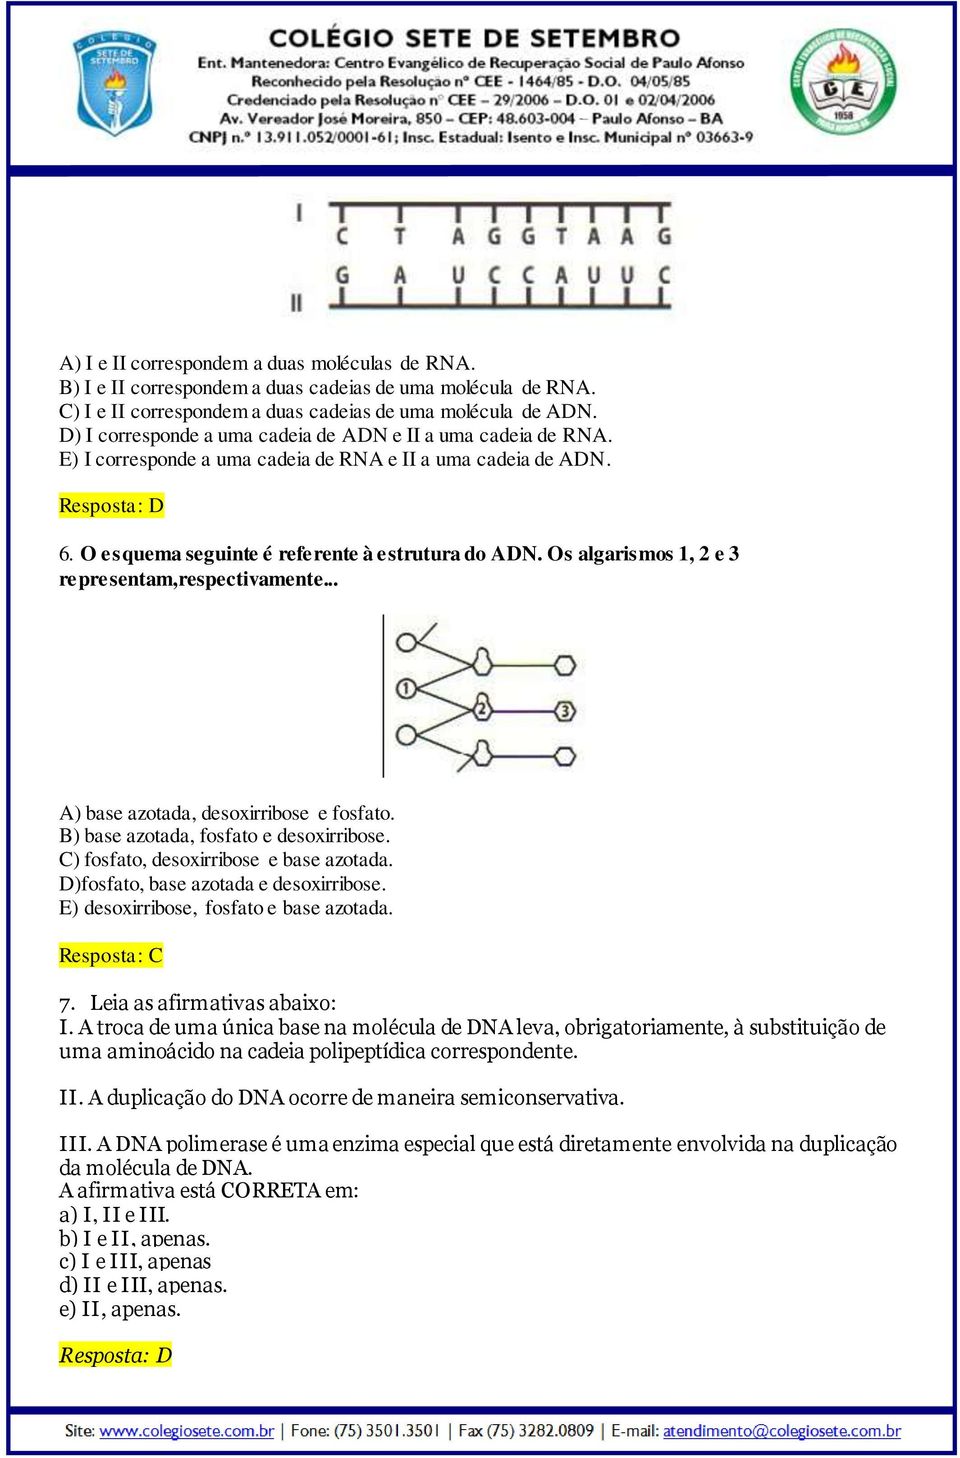 Os algarismos 1, 2 e 3 representam,respectivamente... A) base azotada, desoxirribose e fosfato. B) base azotada, fosfato e desoxirribose. C) fosfato, desoxirribose e base azotada.